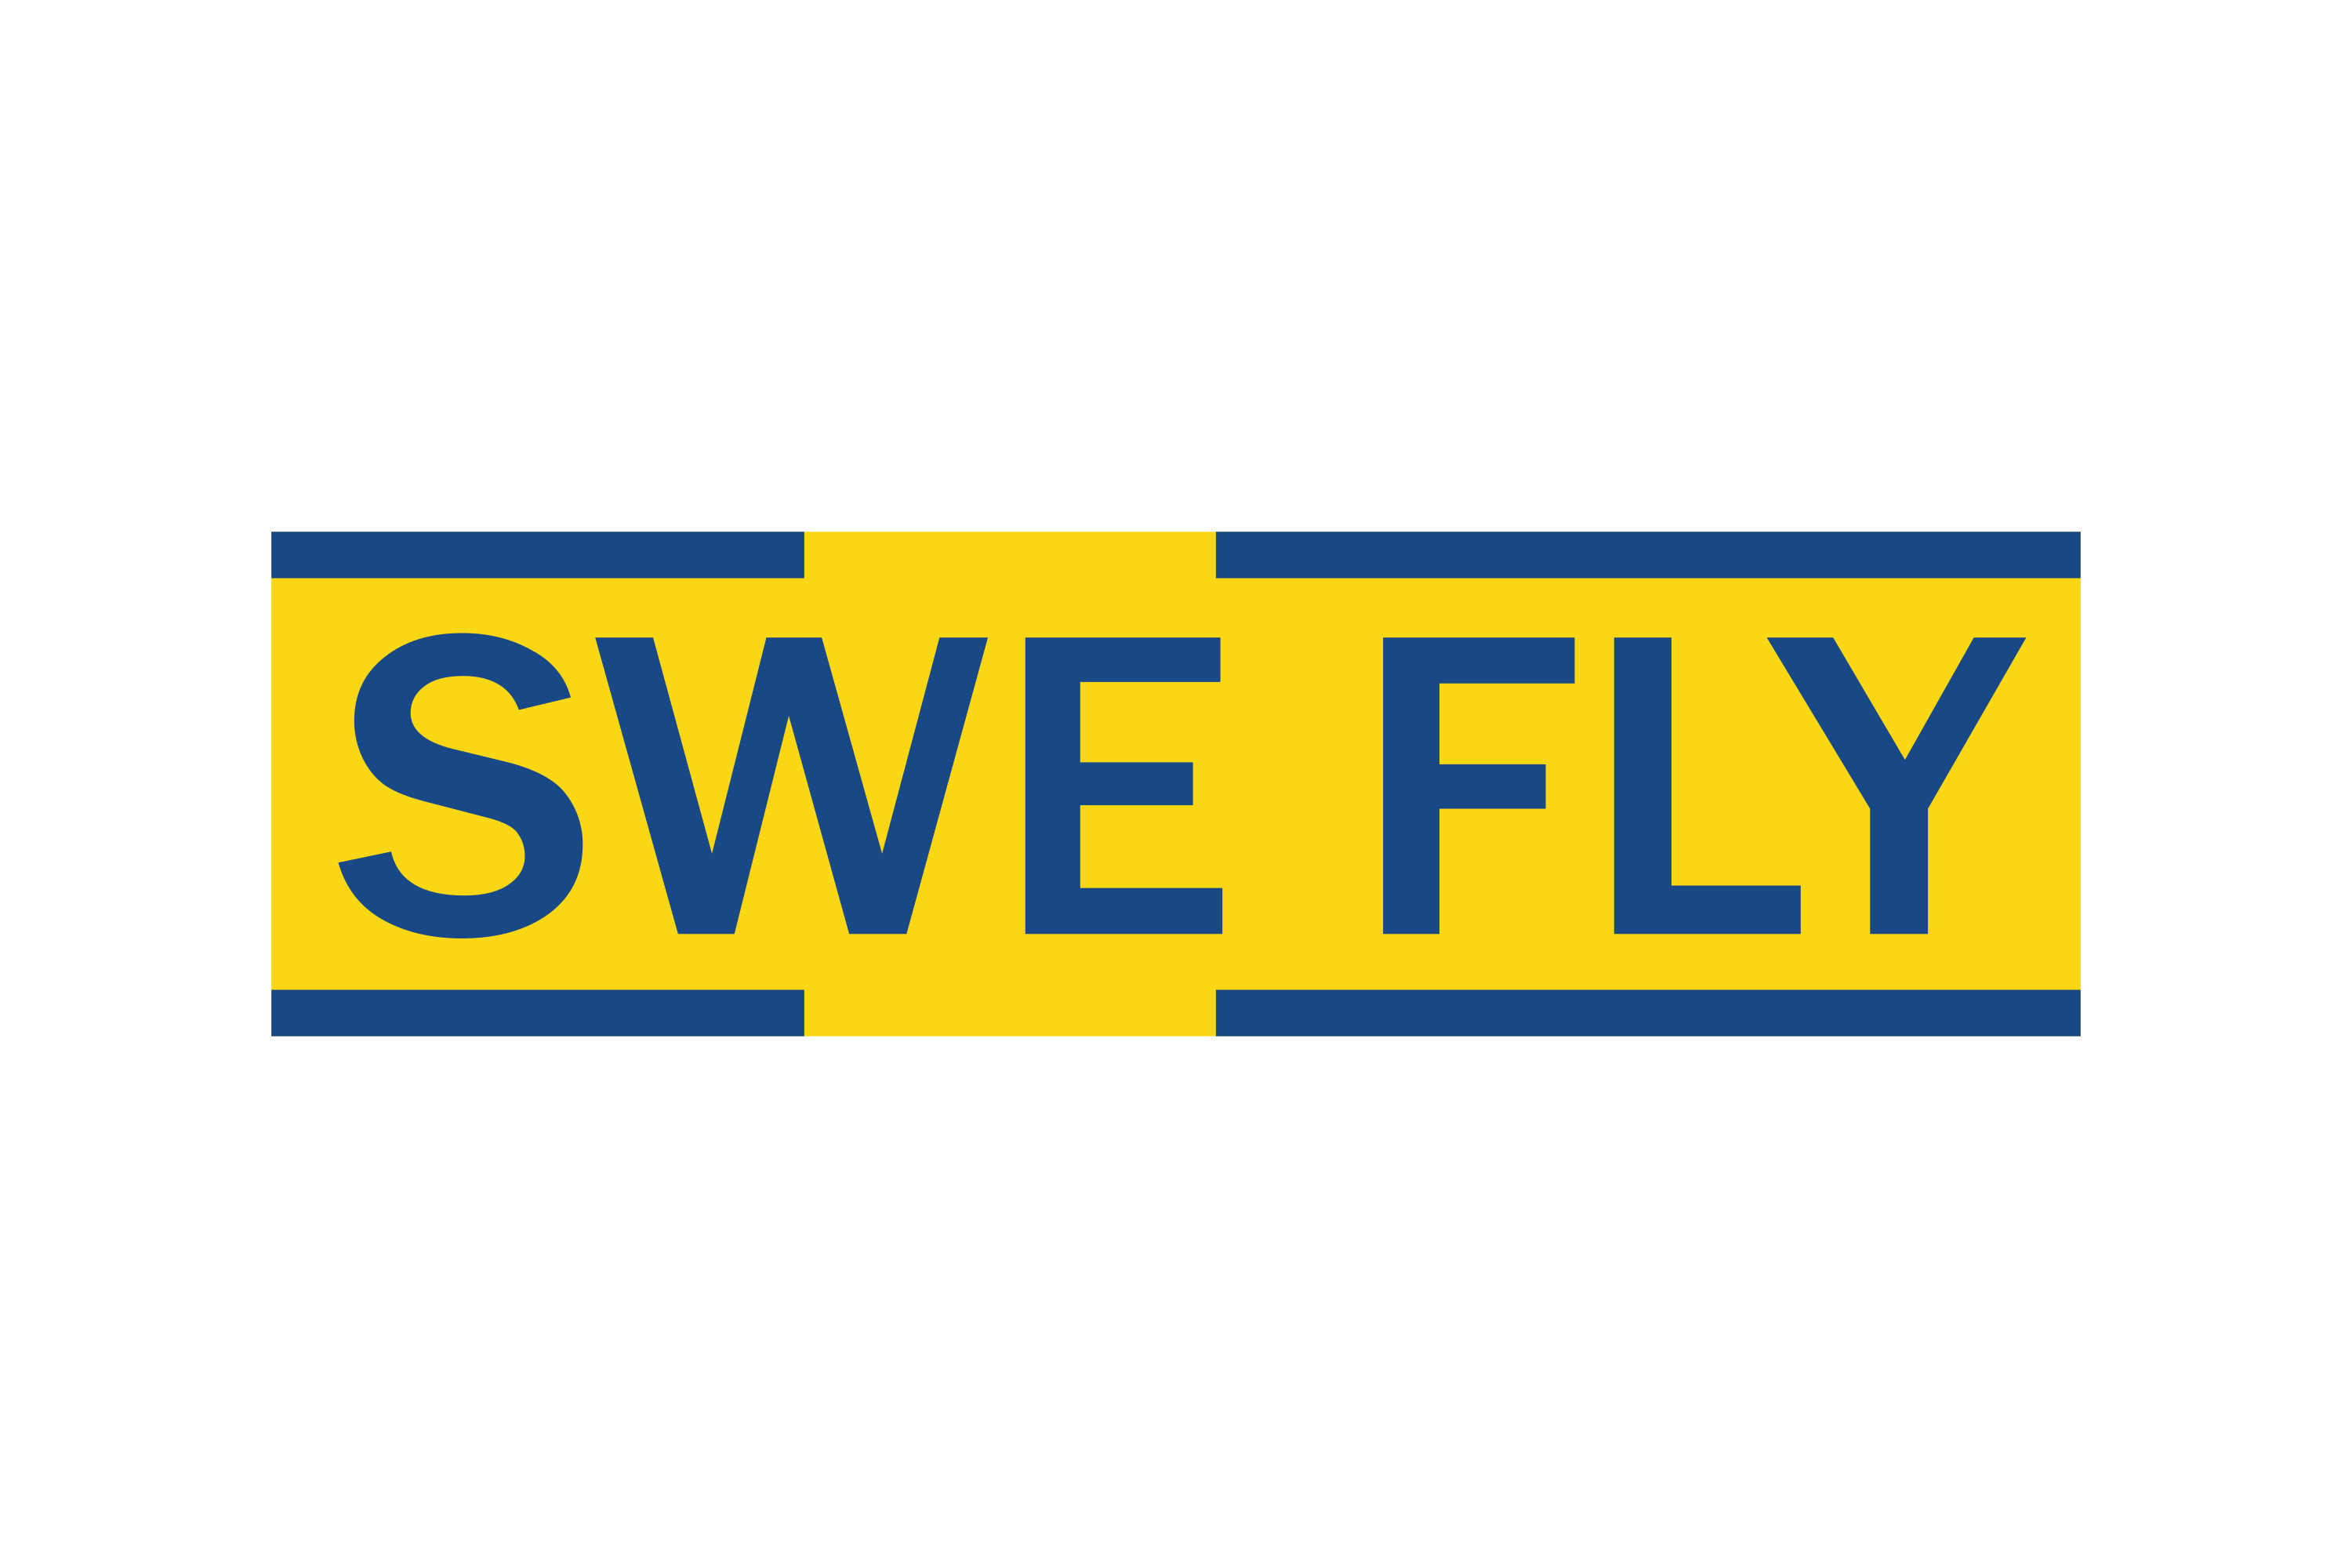 Swe Fly Logo